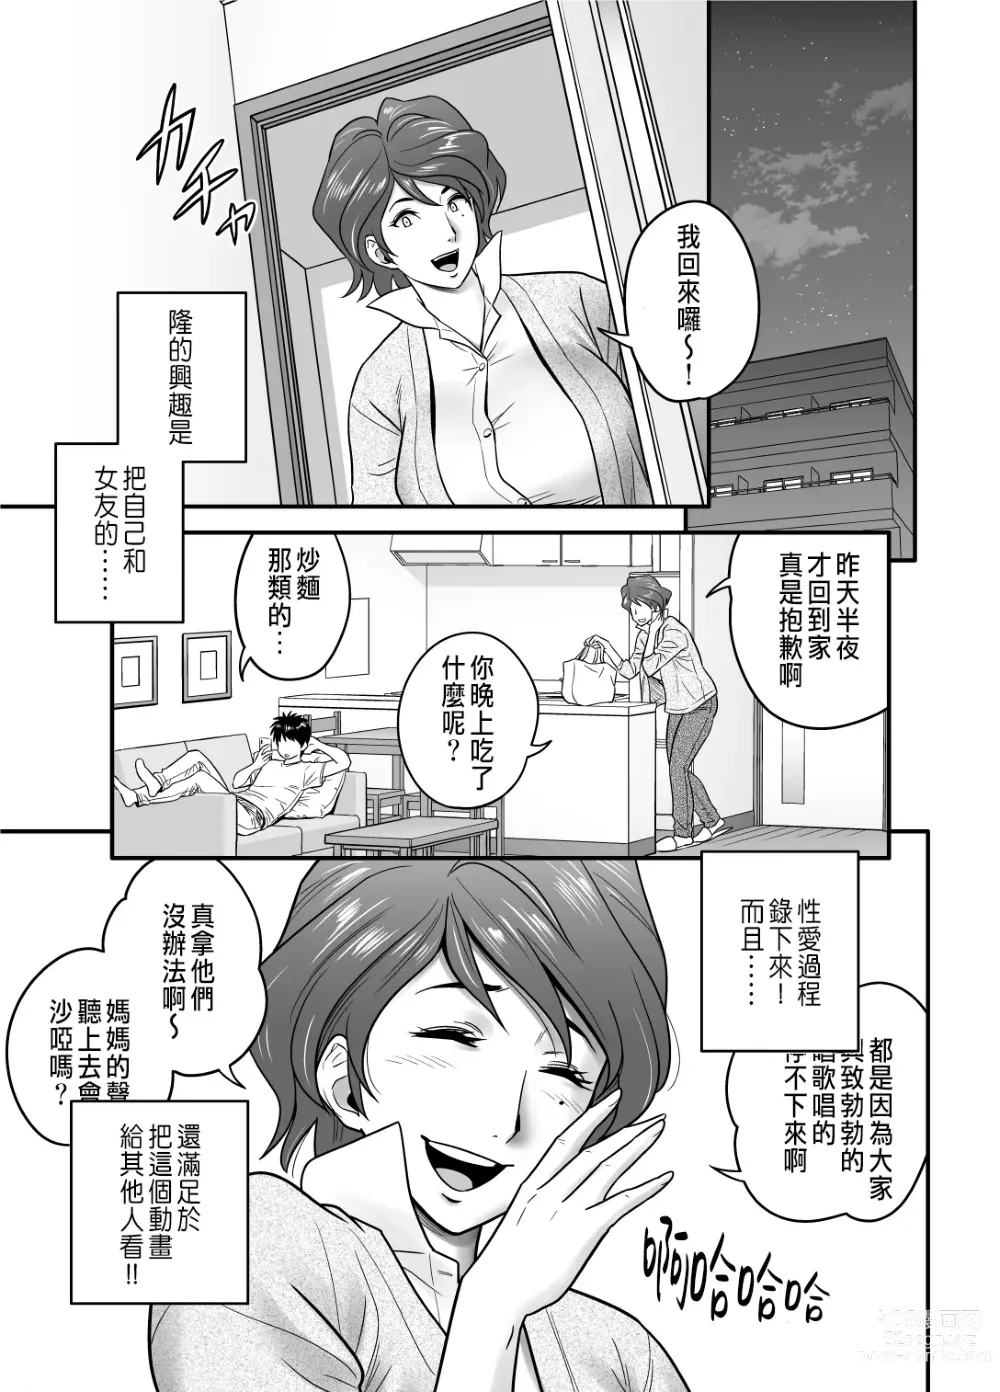 Page 23 of manga 母が友カノになったので1~3